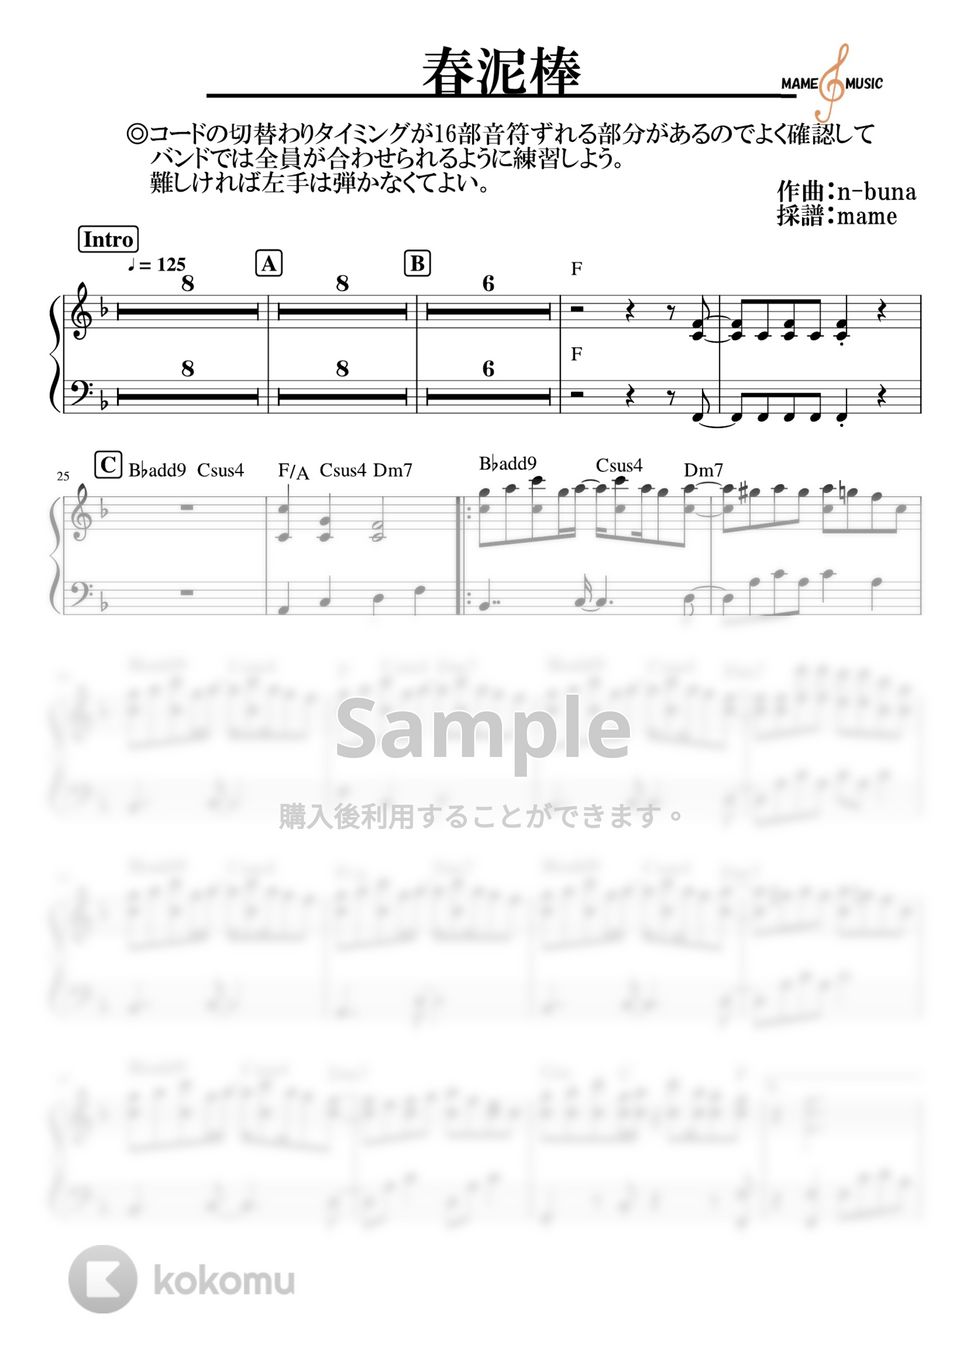 ヨルシカ - 春泥棒 (ピアノパート) by mame